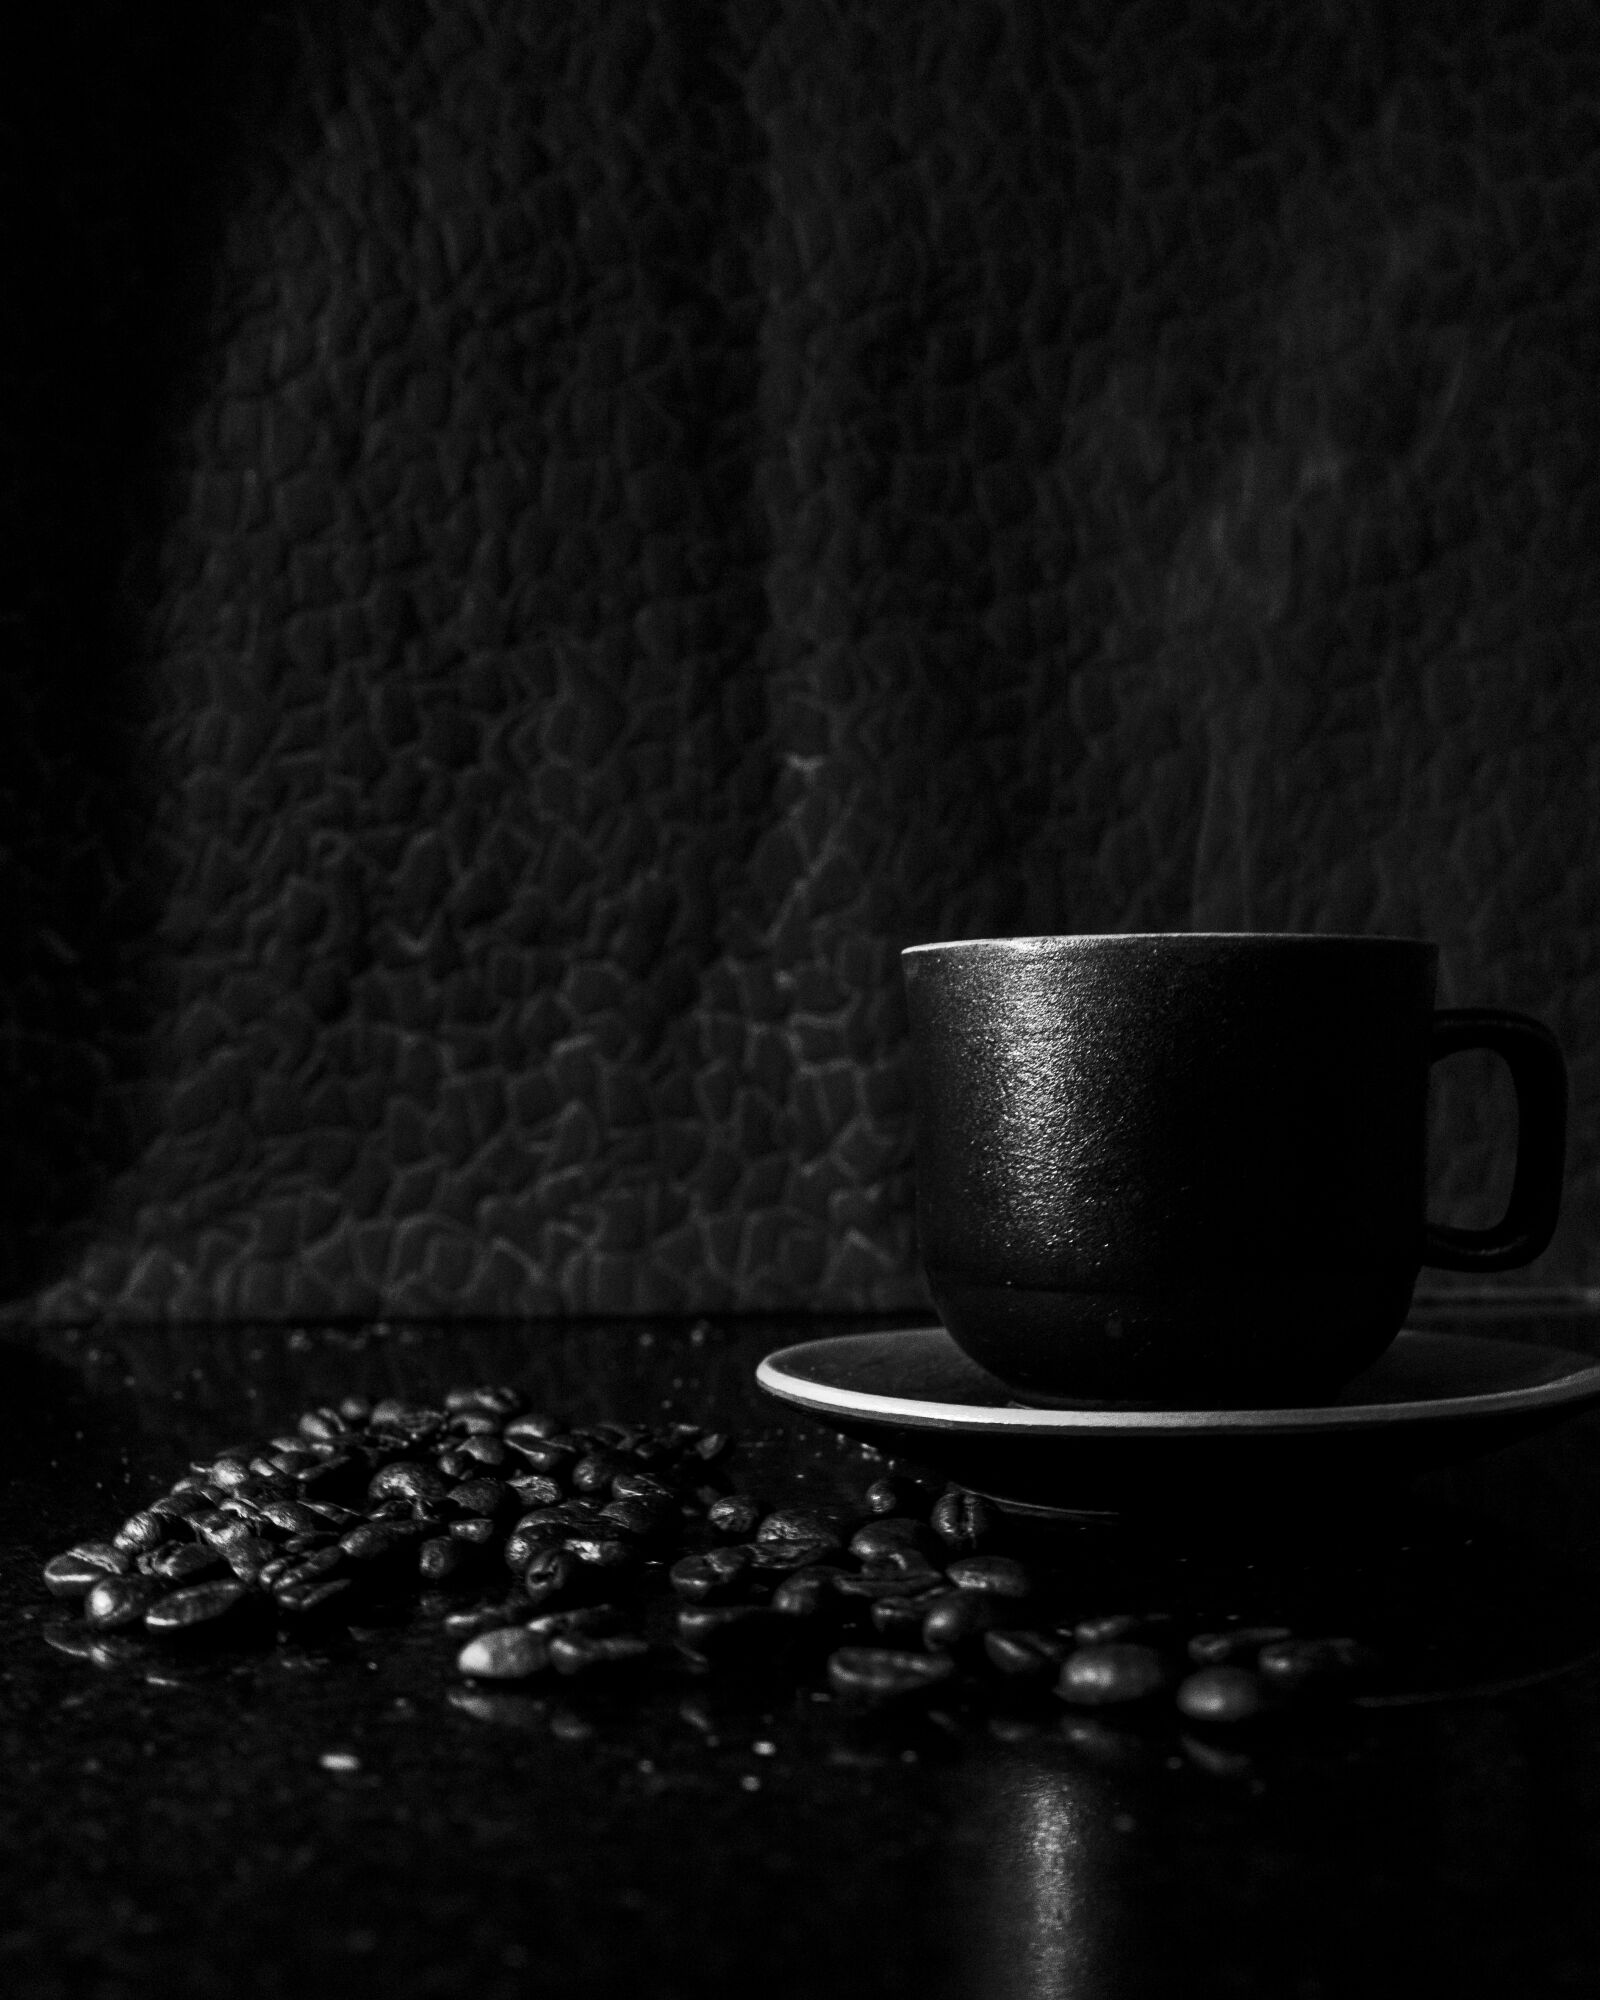 Sony a7 II sample photo. Coffee, coffee bean, lowkey photography